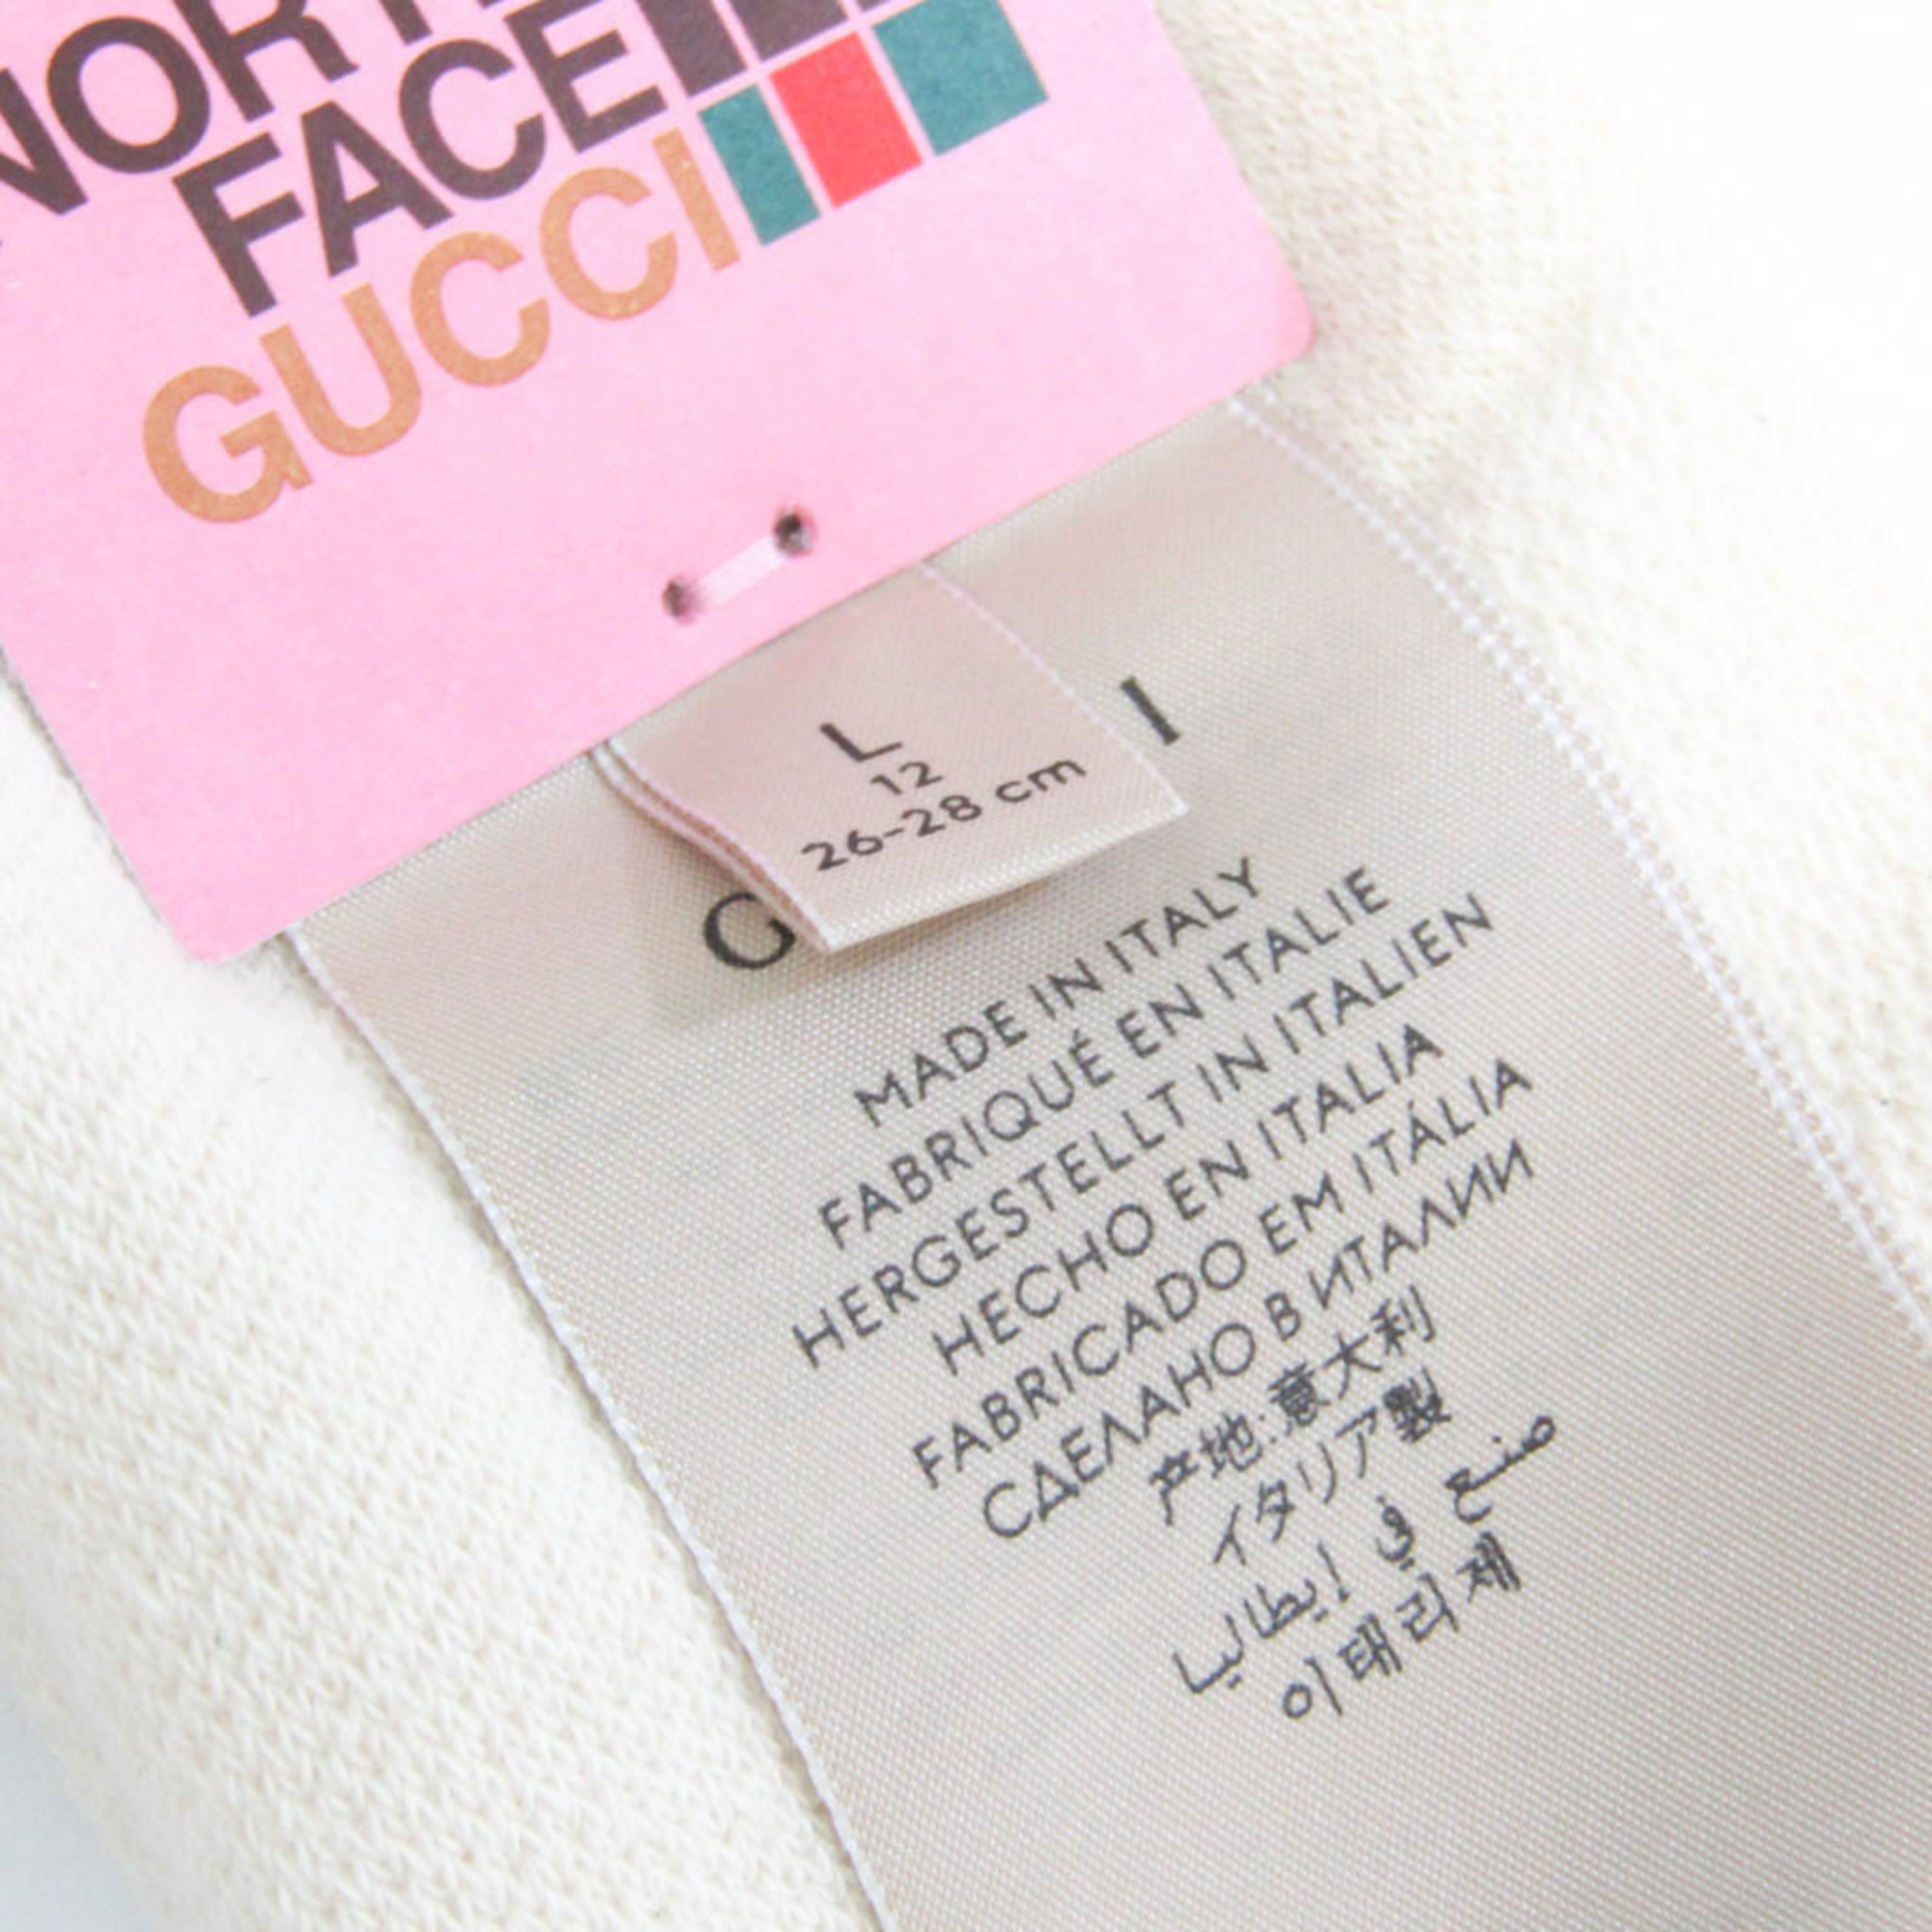 グッチ(Gucci) メンズ,レディース クルーソックス (オフホワイト) グッチ×ノースフェイス コラボ ロゴソックス 652043